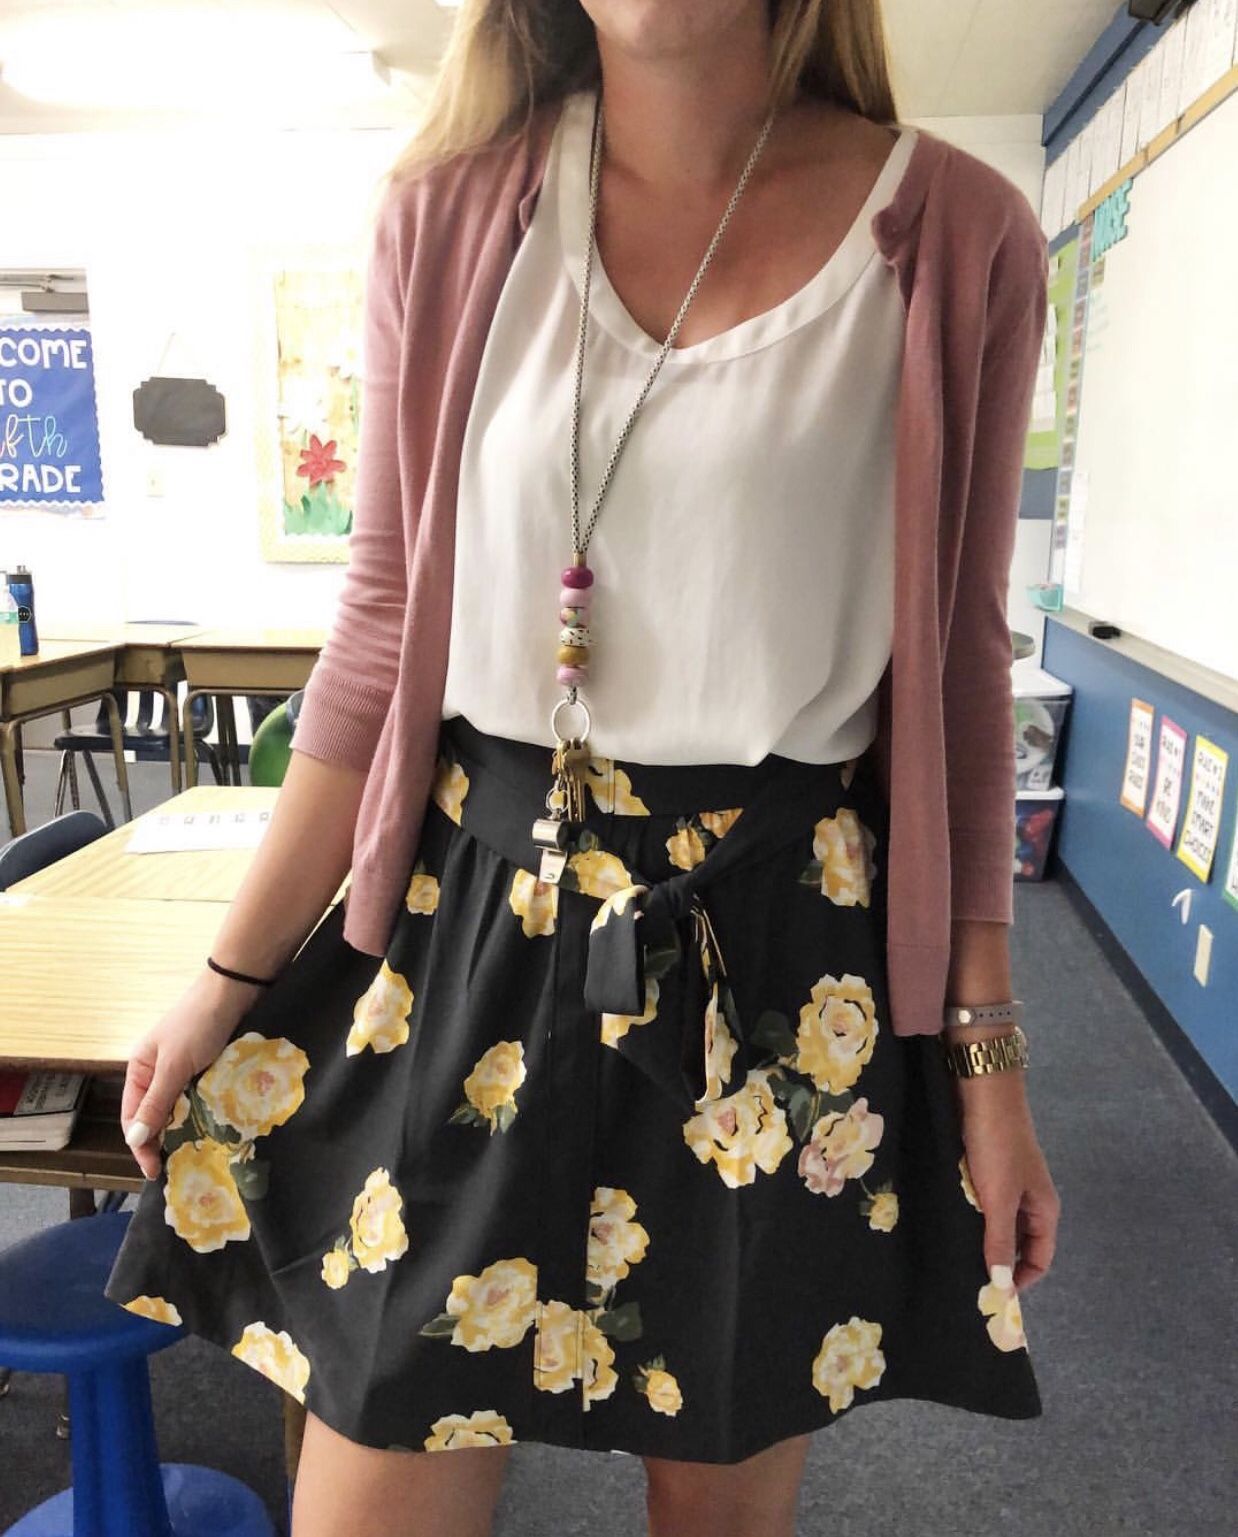 11 Best Teacher Outfits - Chaylor & Mads -   16 dress For Work teachers ideas